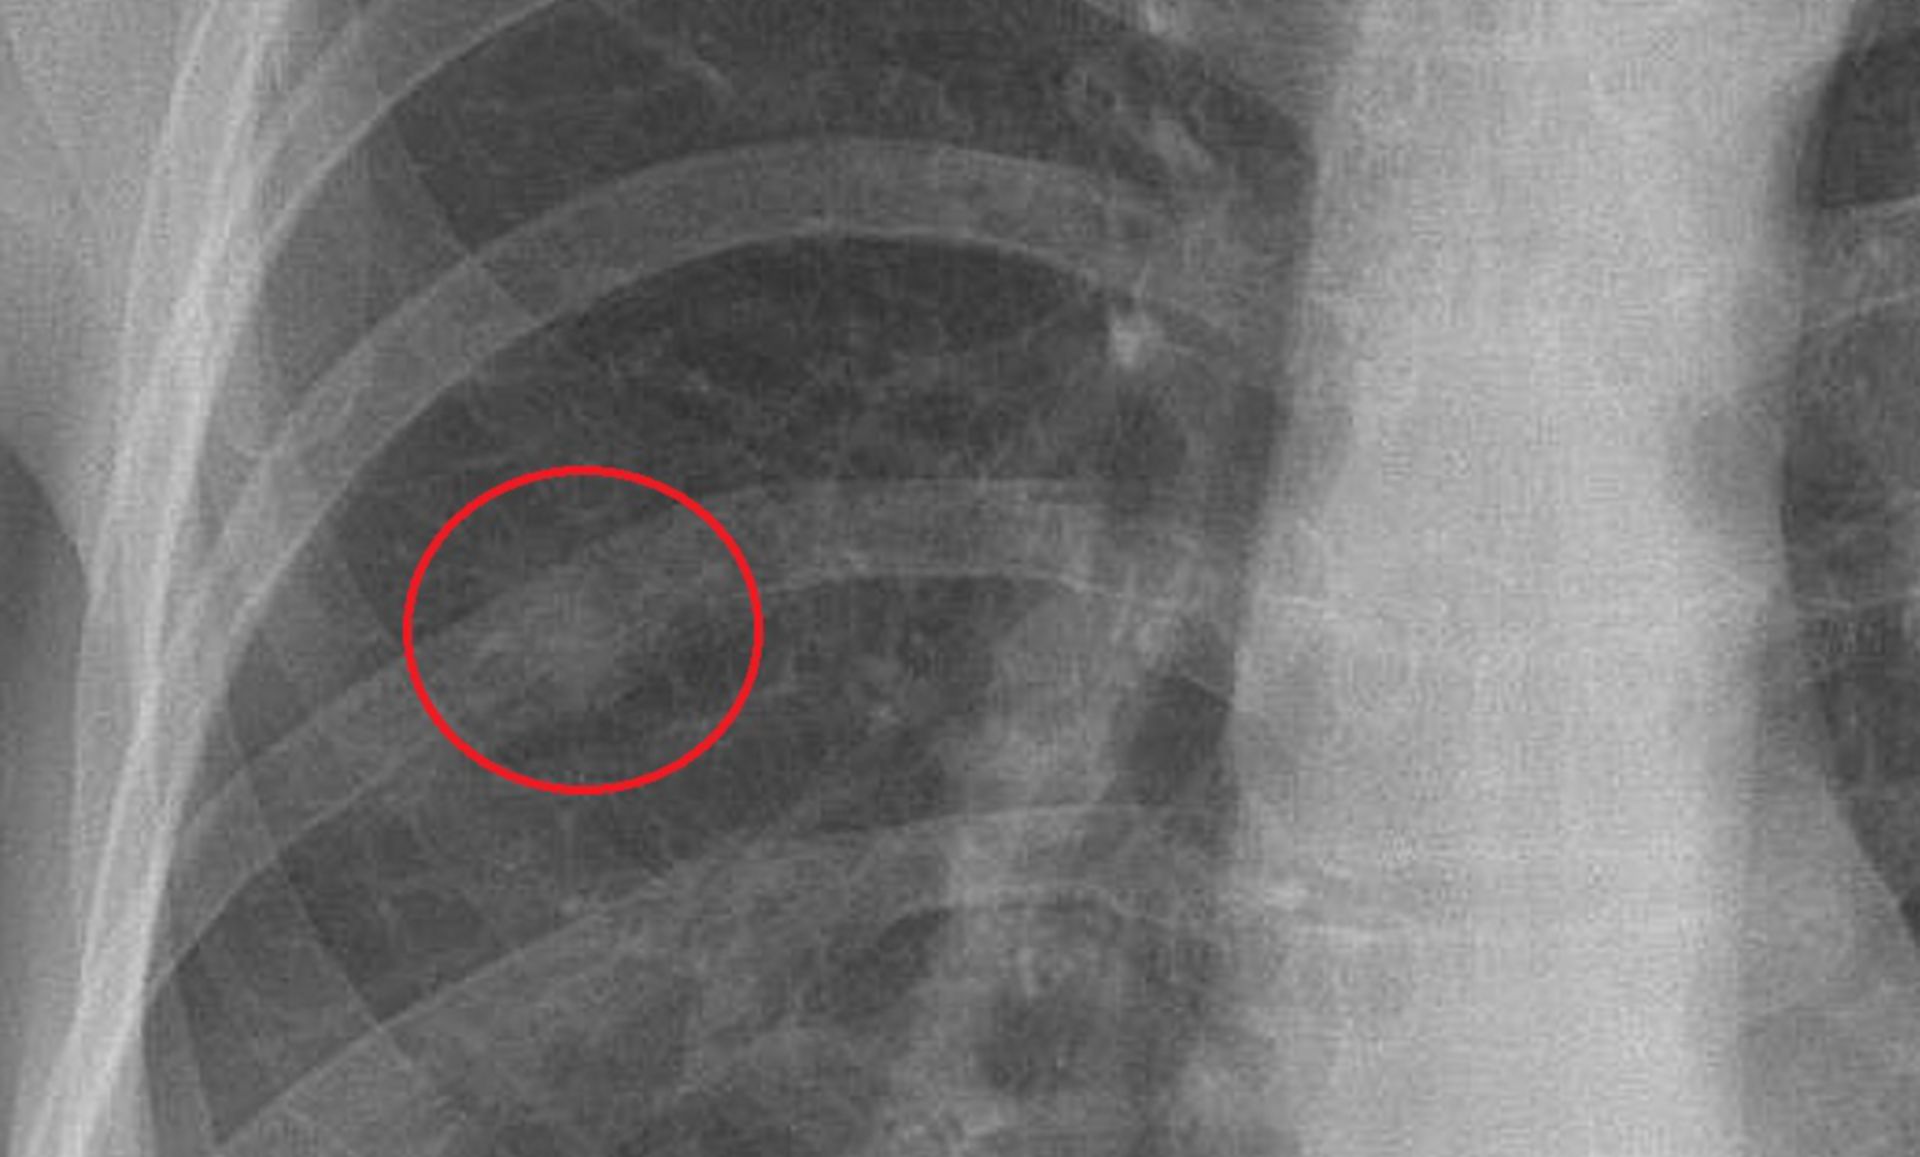 th_pa_ausschnitt1: Röntgen des Thorax in frontaler Ebene